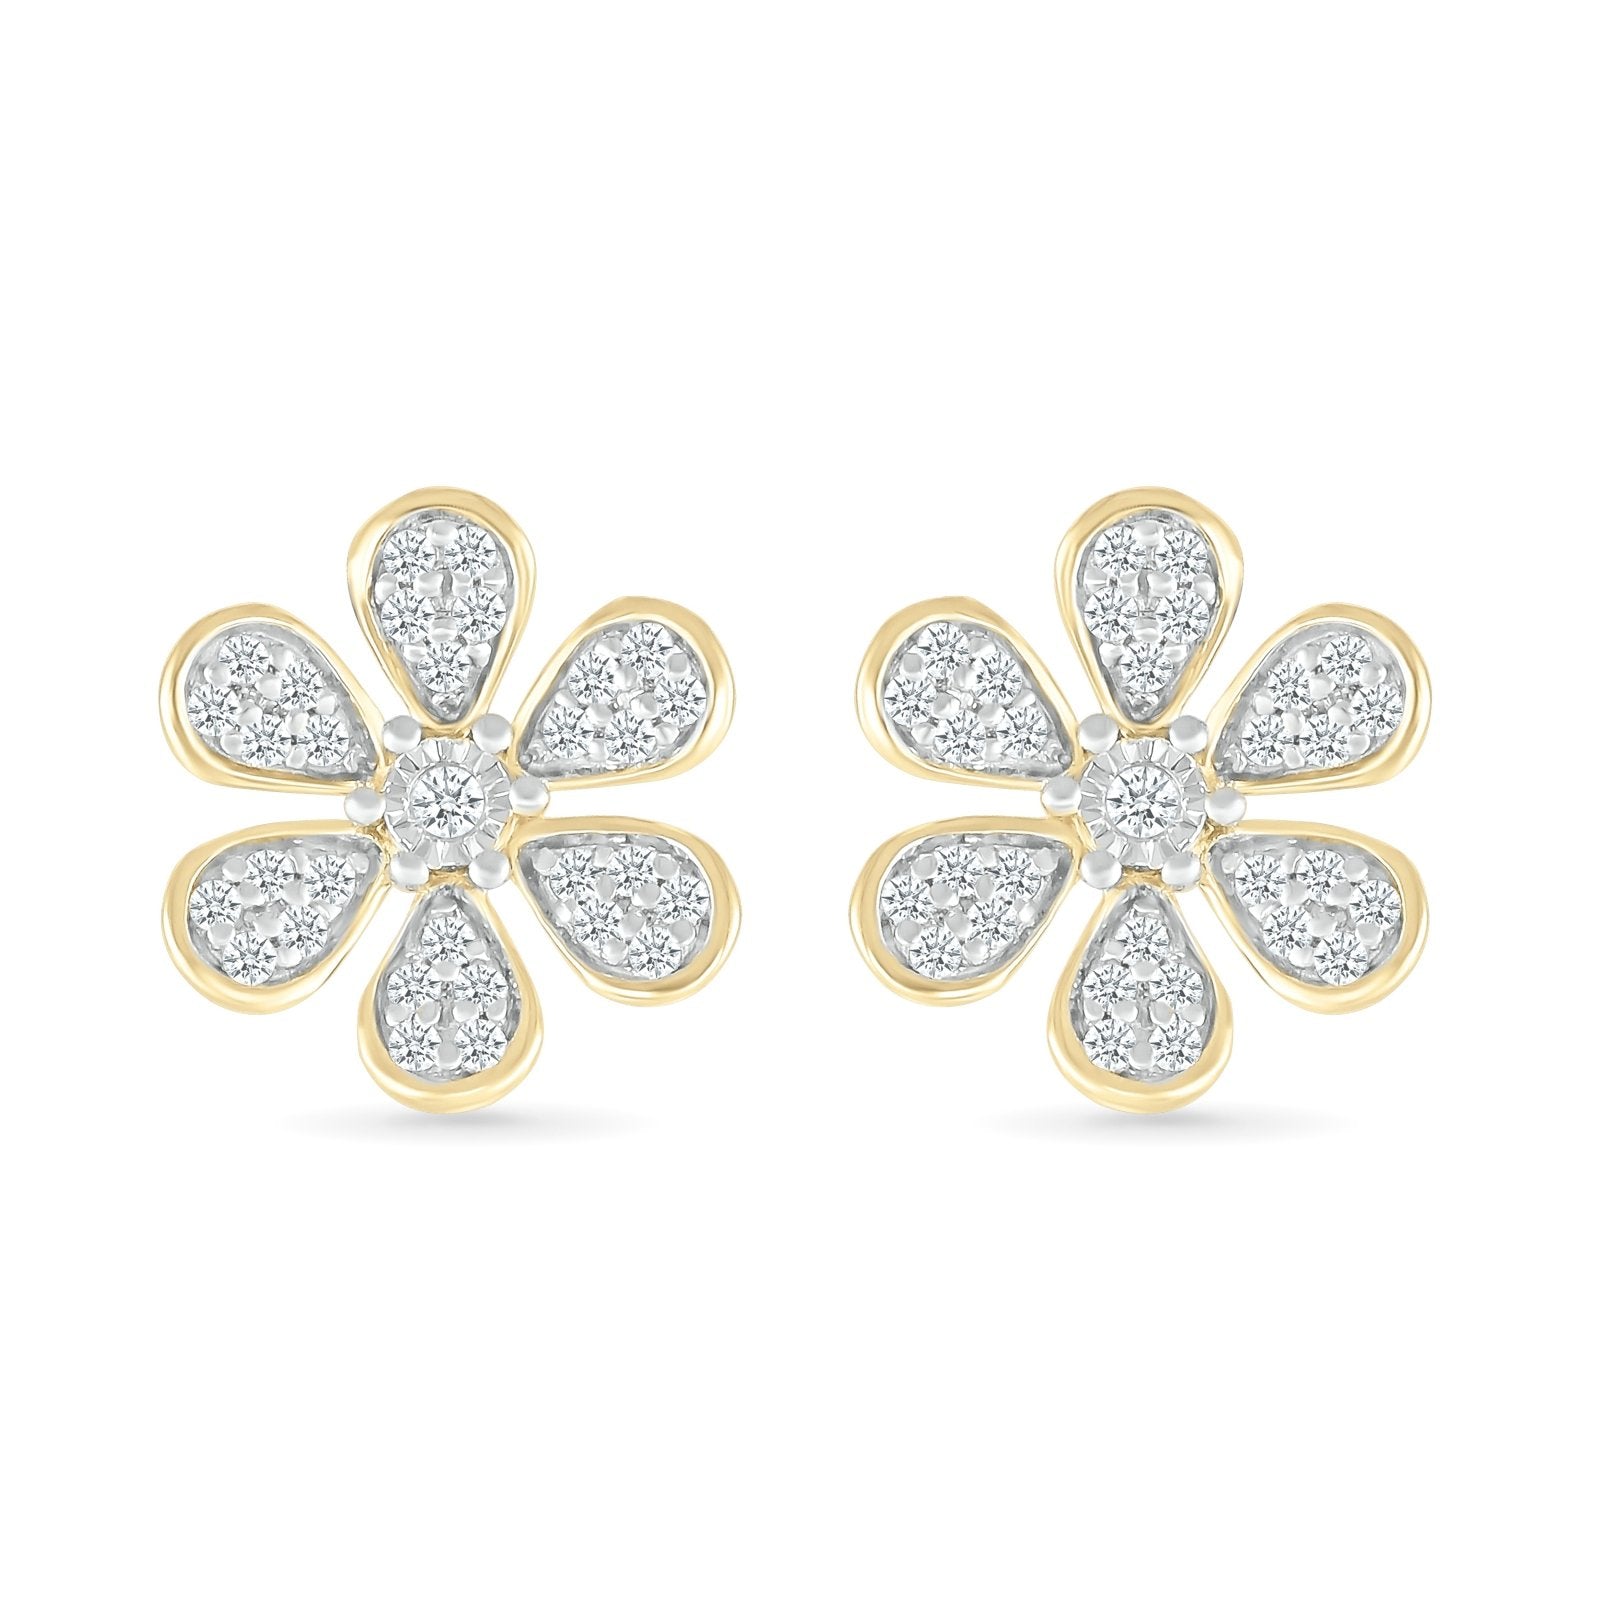 Diamond Flower Earrings with Gold Bezel Earrings Estella Collection 32669 10k April Birthstone Colorless Gemstone #tag4# #tag5# #tag6# #tag7# #tag8# #tag9# #tag10#